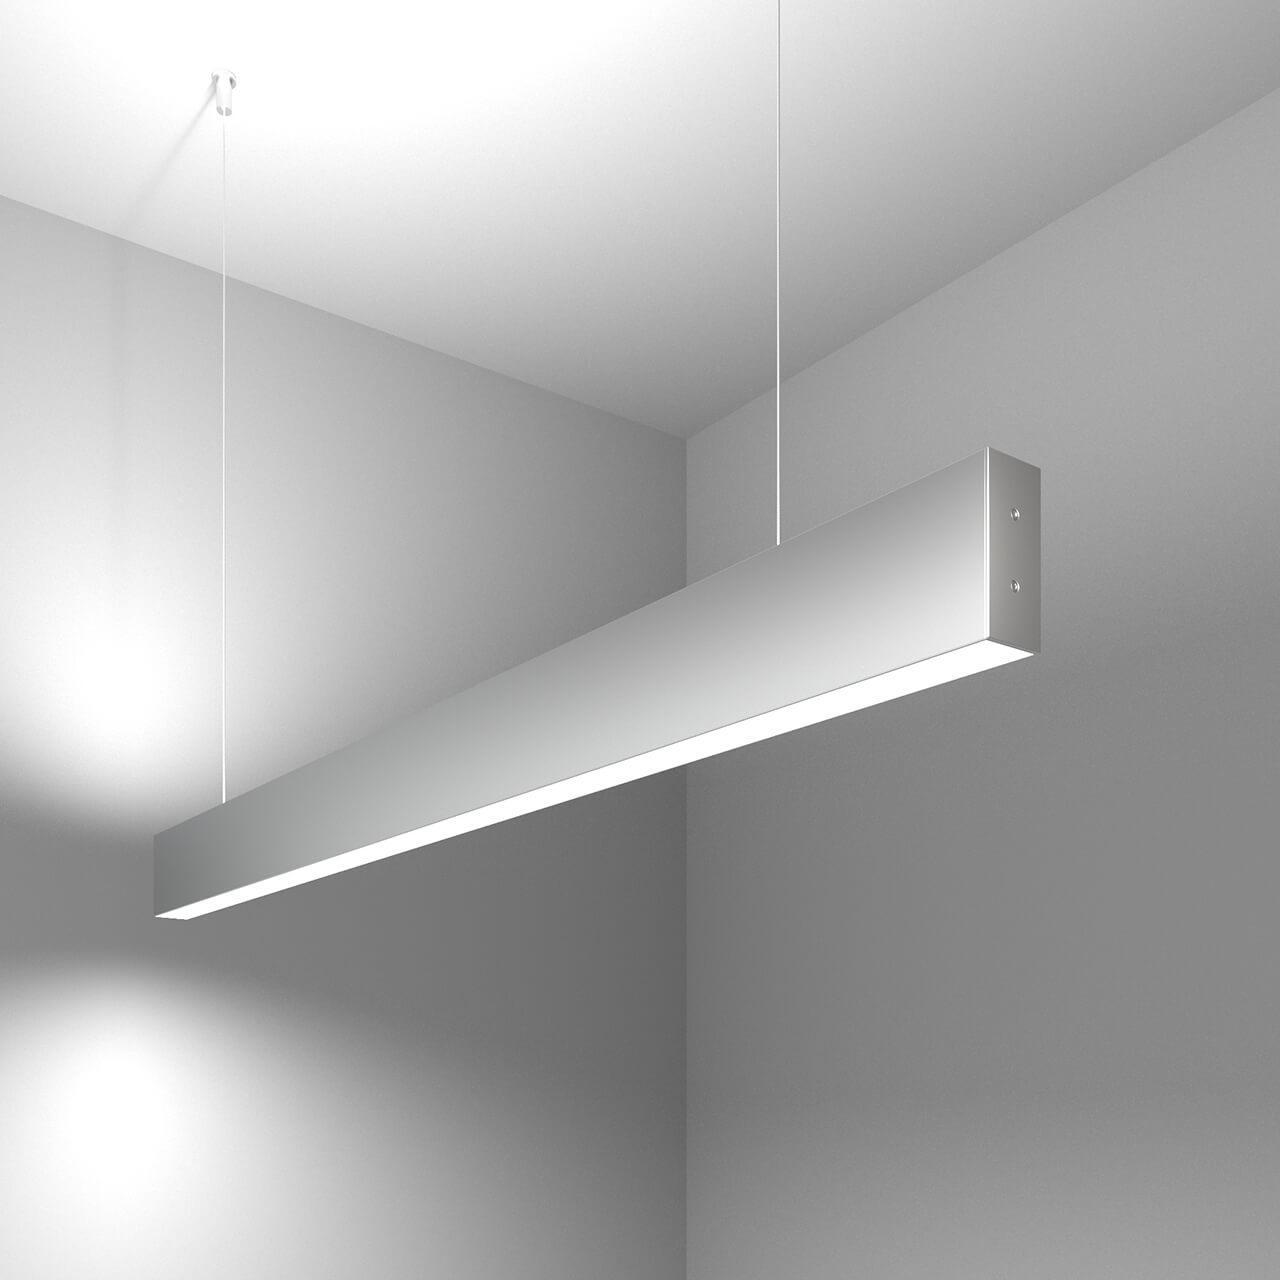 Подвесной светодиодный светильник Elektrostandard LSG-01-2-8 103-32-6500-MS 4690389129414 светодиодный потолочный светильник 18 вт круглый потолочный светильник для кухни спальни прихожей белый свет 6500 7000k